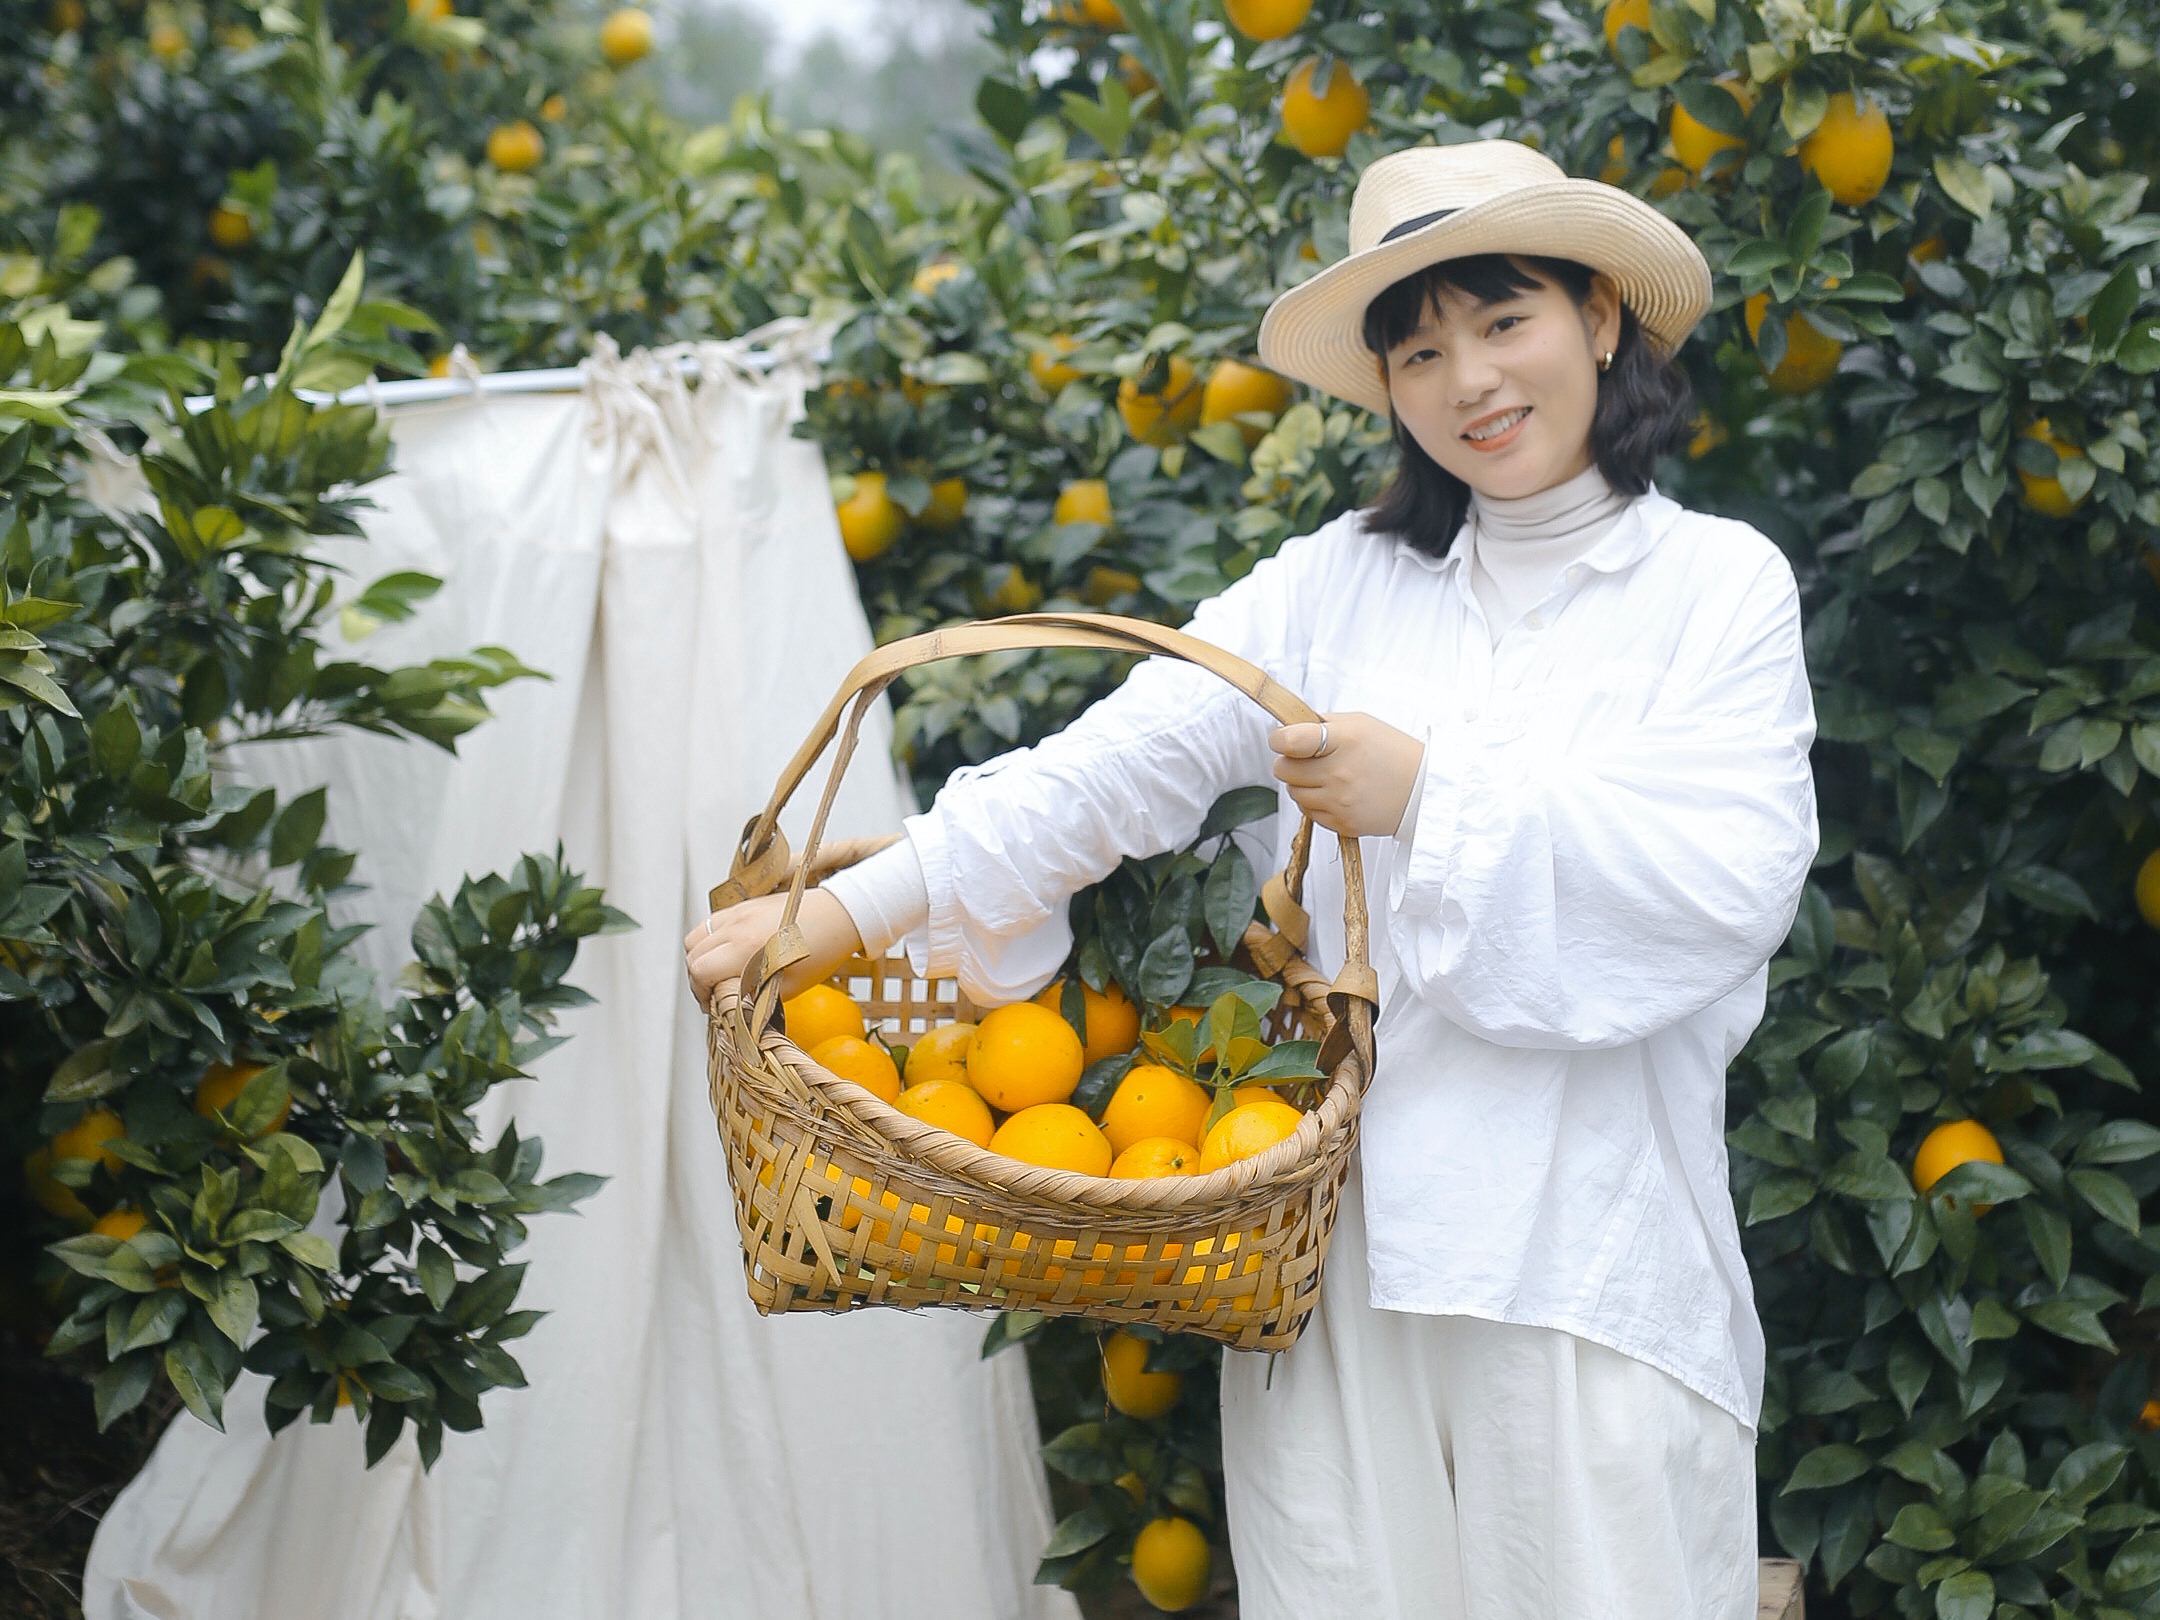 人物夏天一个人果园摘果子摄影图配图高清摄影大图-千库网